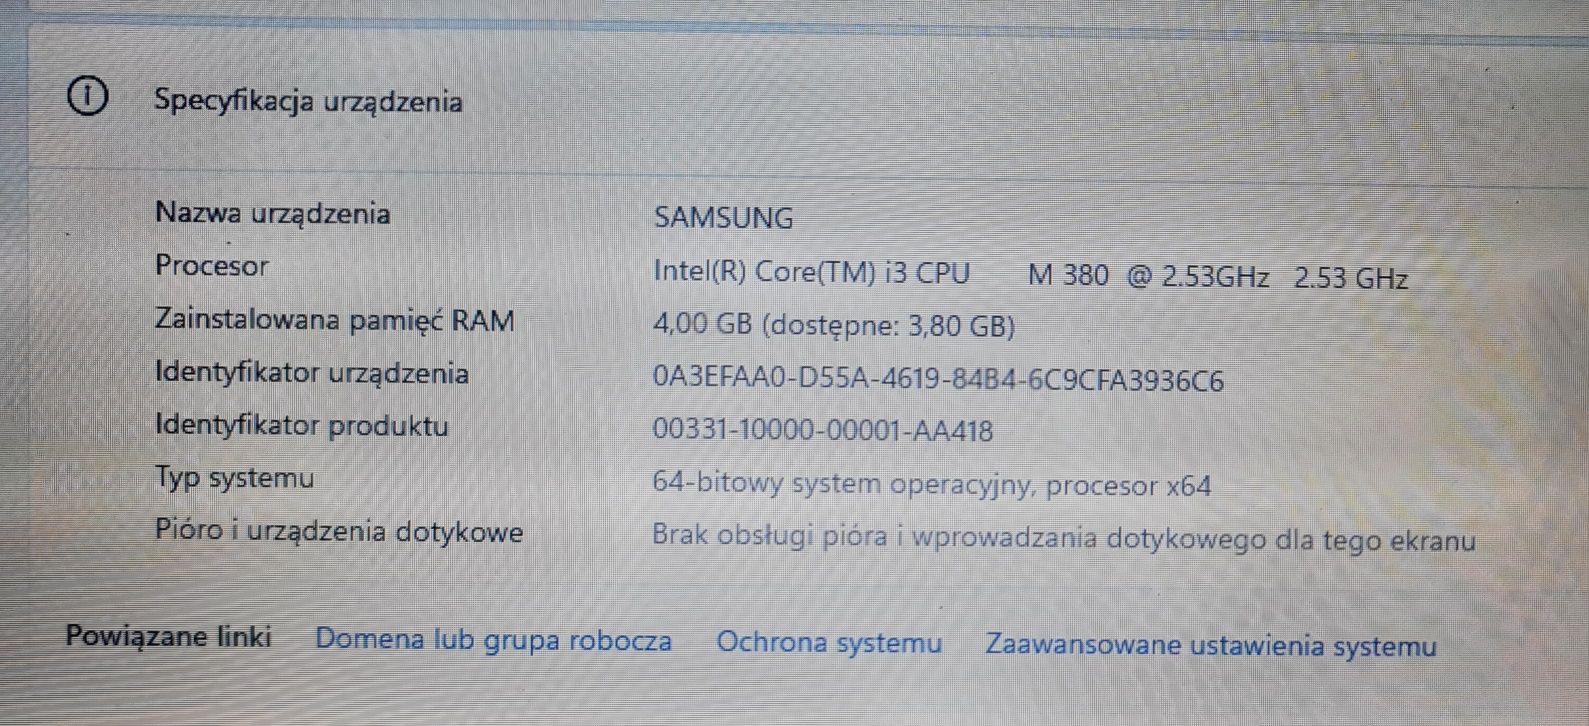 Laptop Samsung, Intel I3, 4GB ram ddr3, 320GB hdd, 15,6 cala